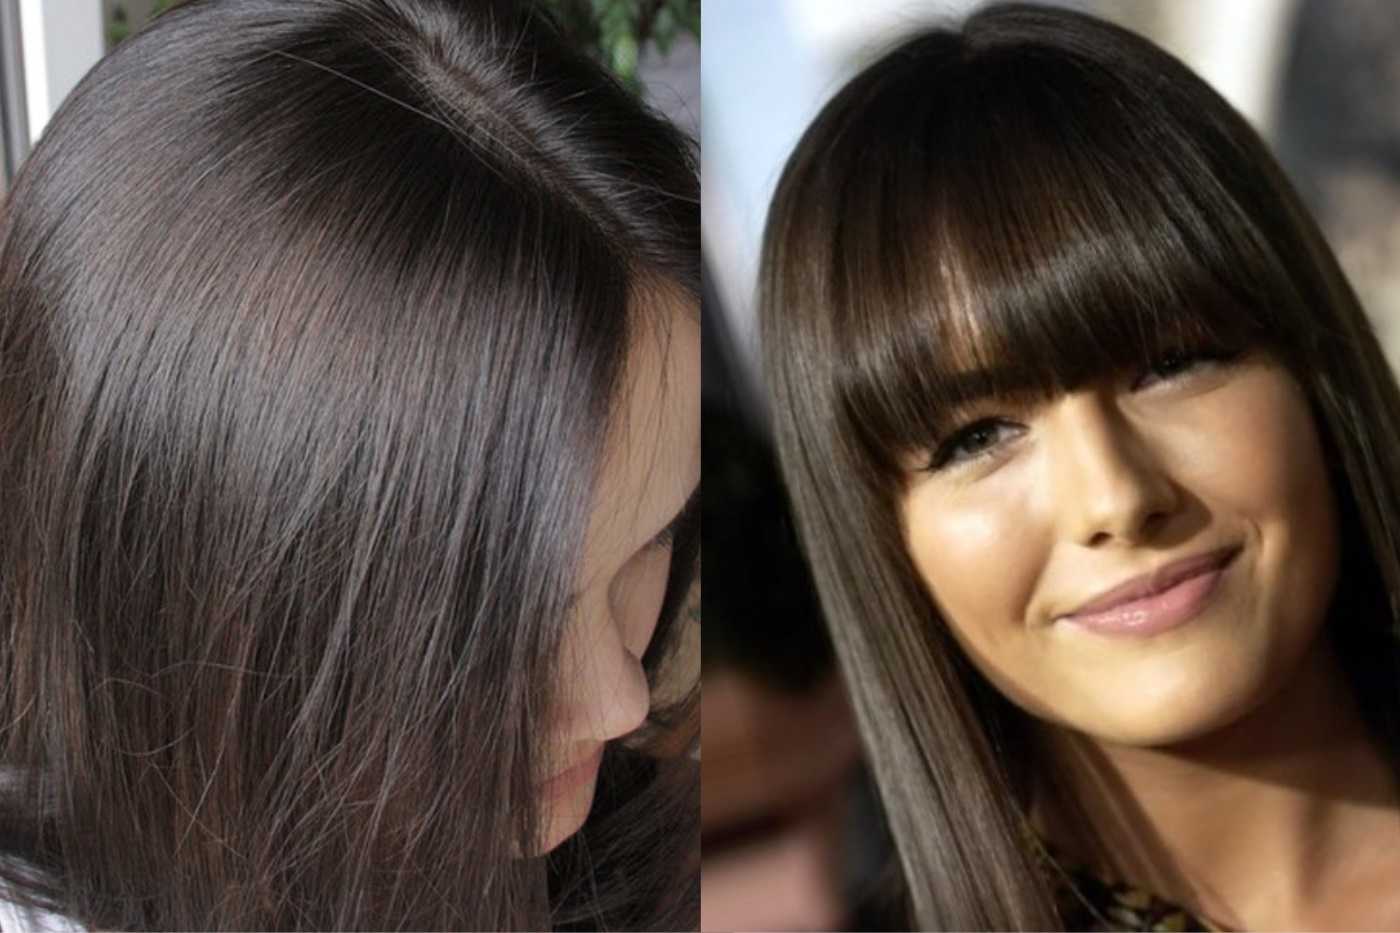 Каштановый цвет волос фото до и после окрашивания пепельно